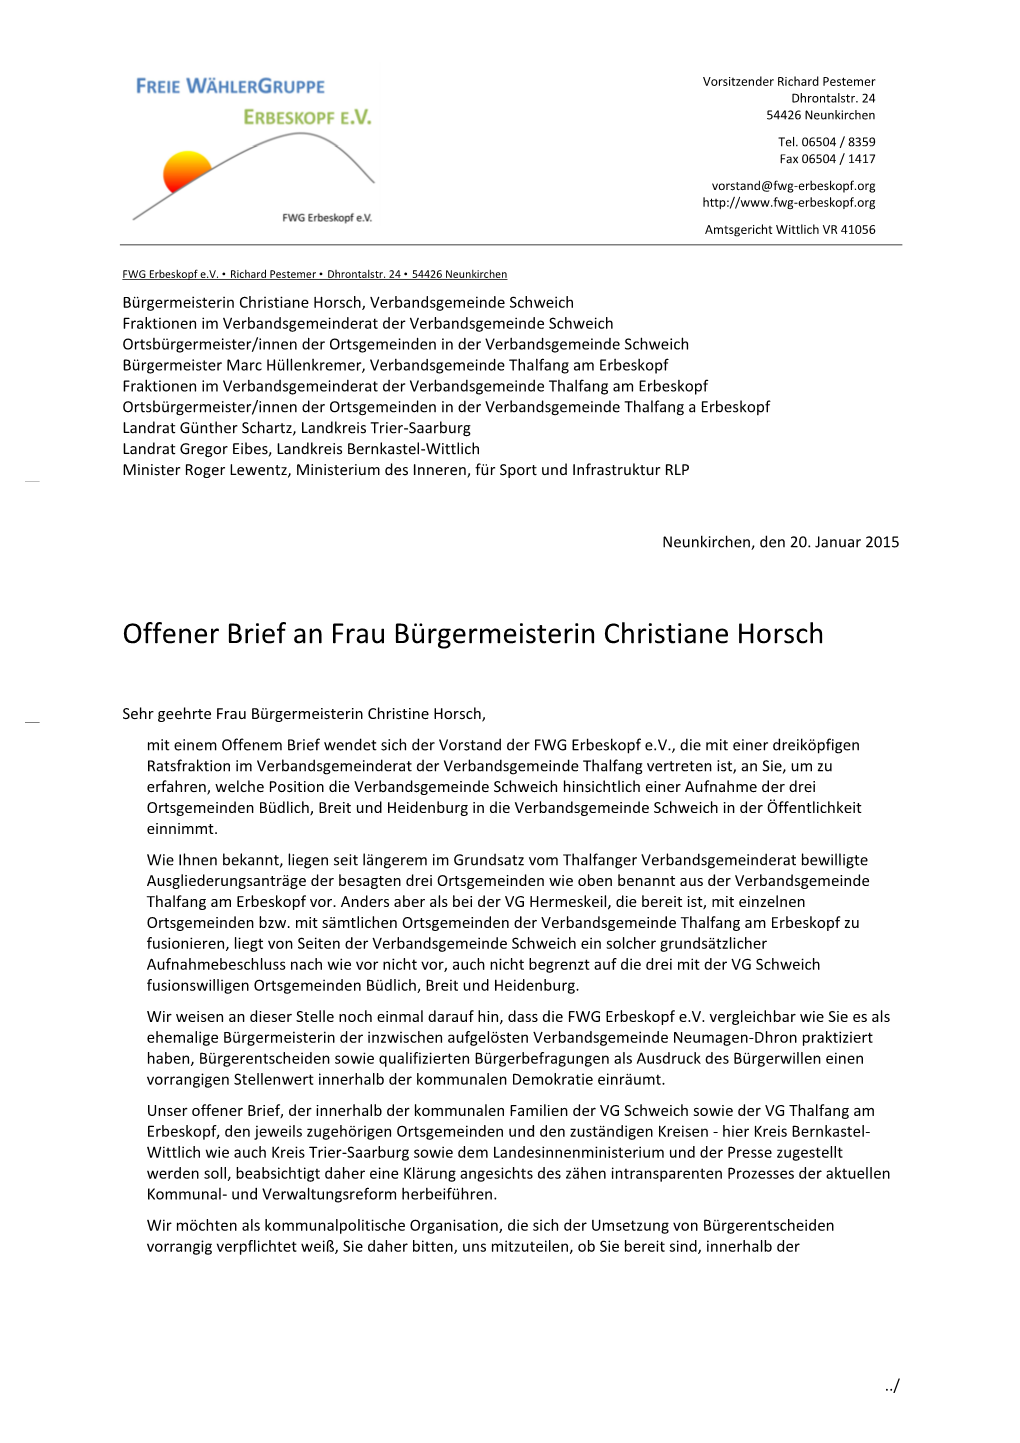 Offener Brief an Frau Bürgermeisterin Christiane Horsch